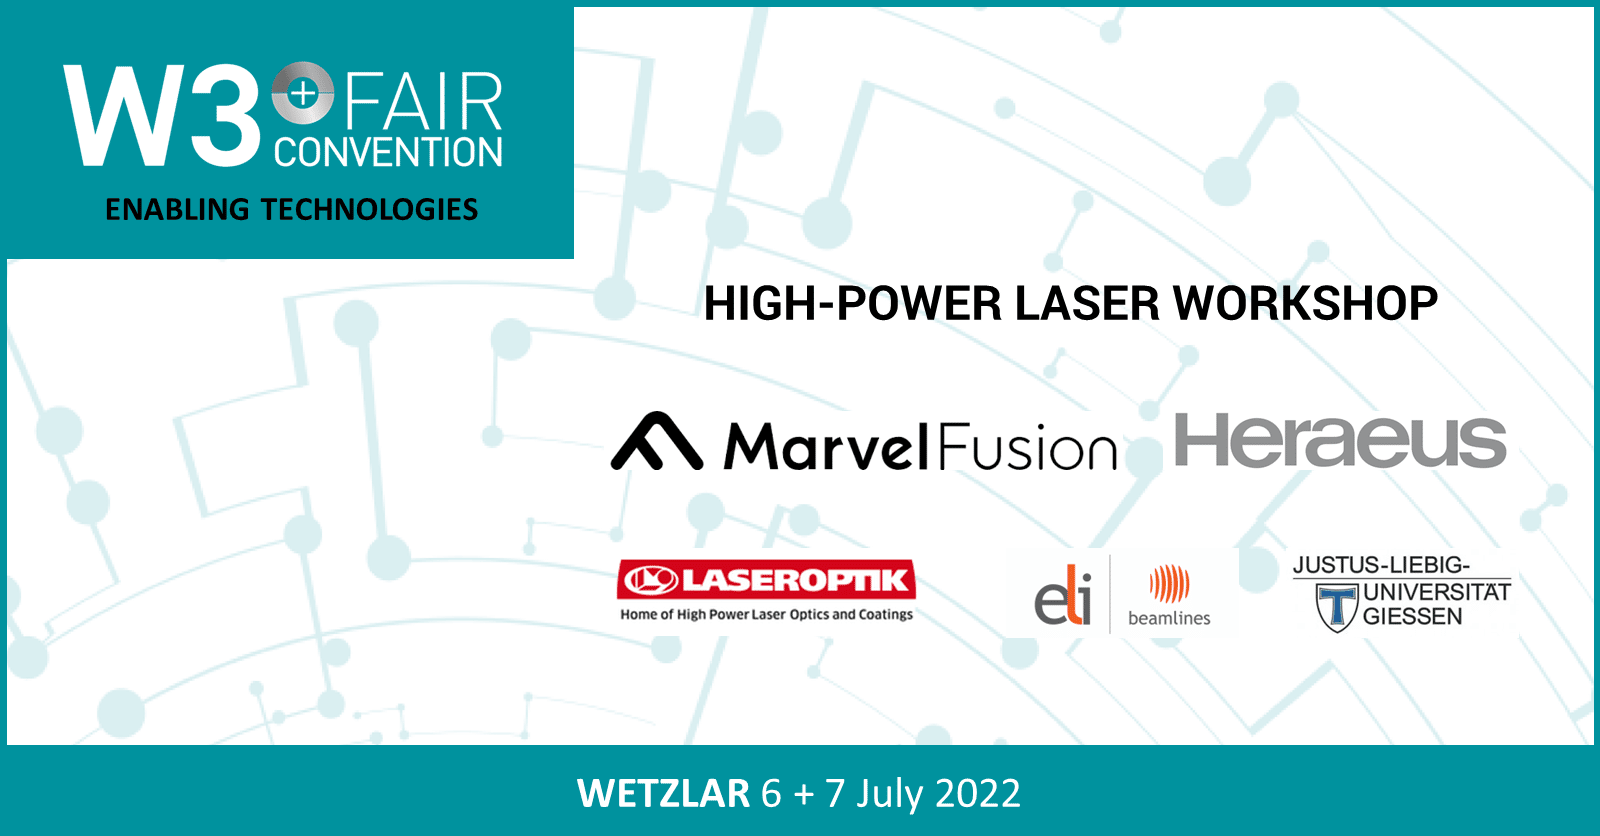 W3+ Fair: High-Power Laser Workshop by Wetzlar Network